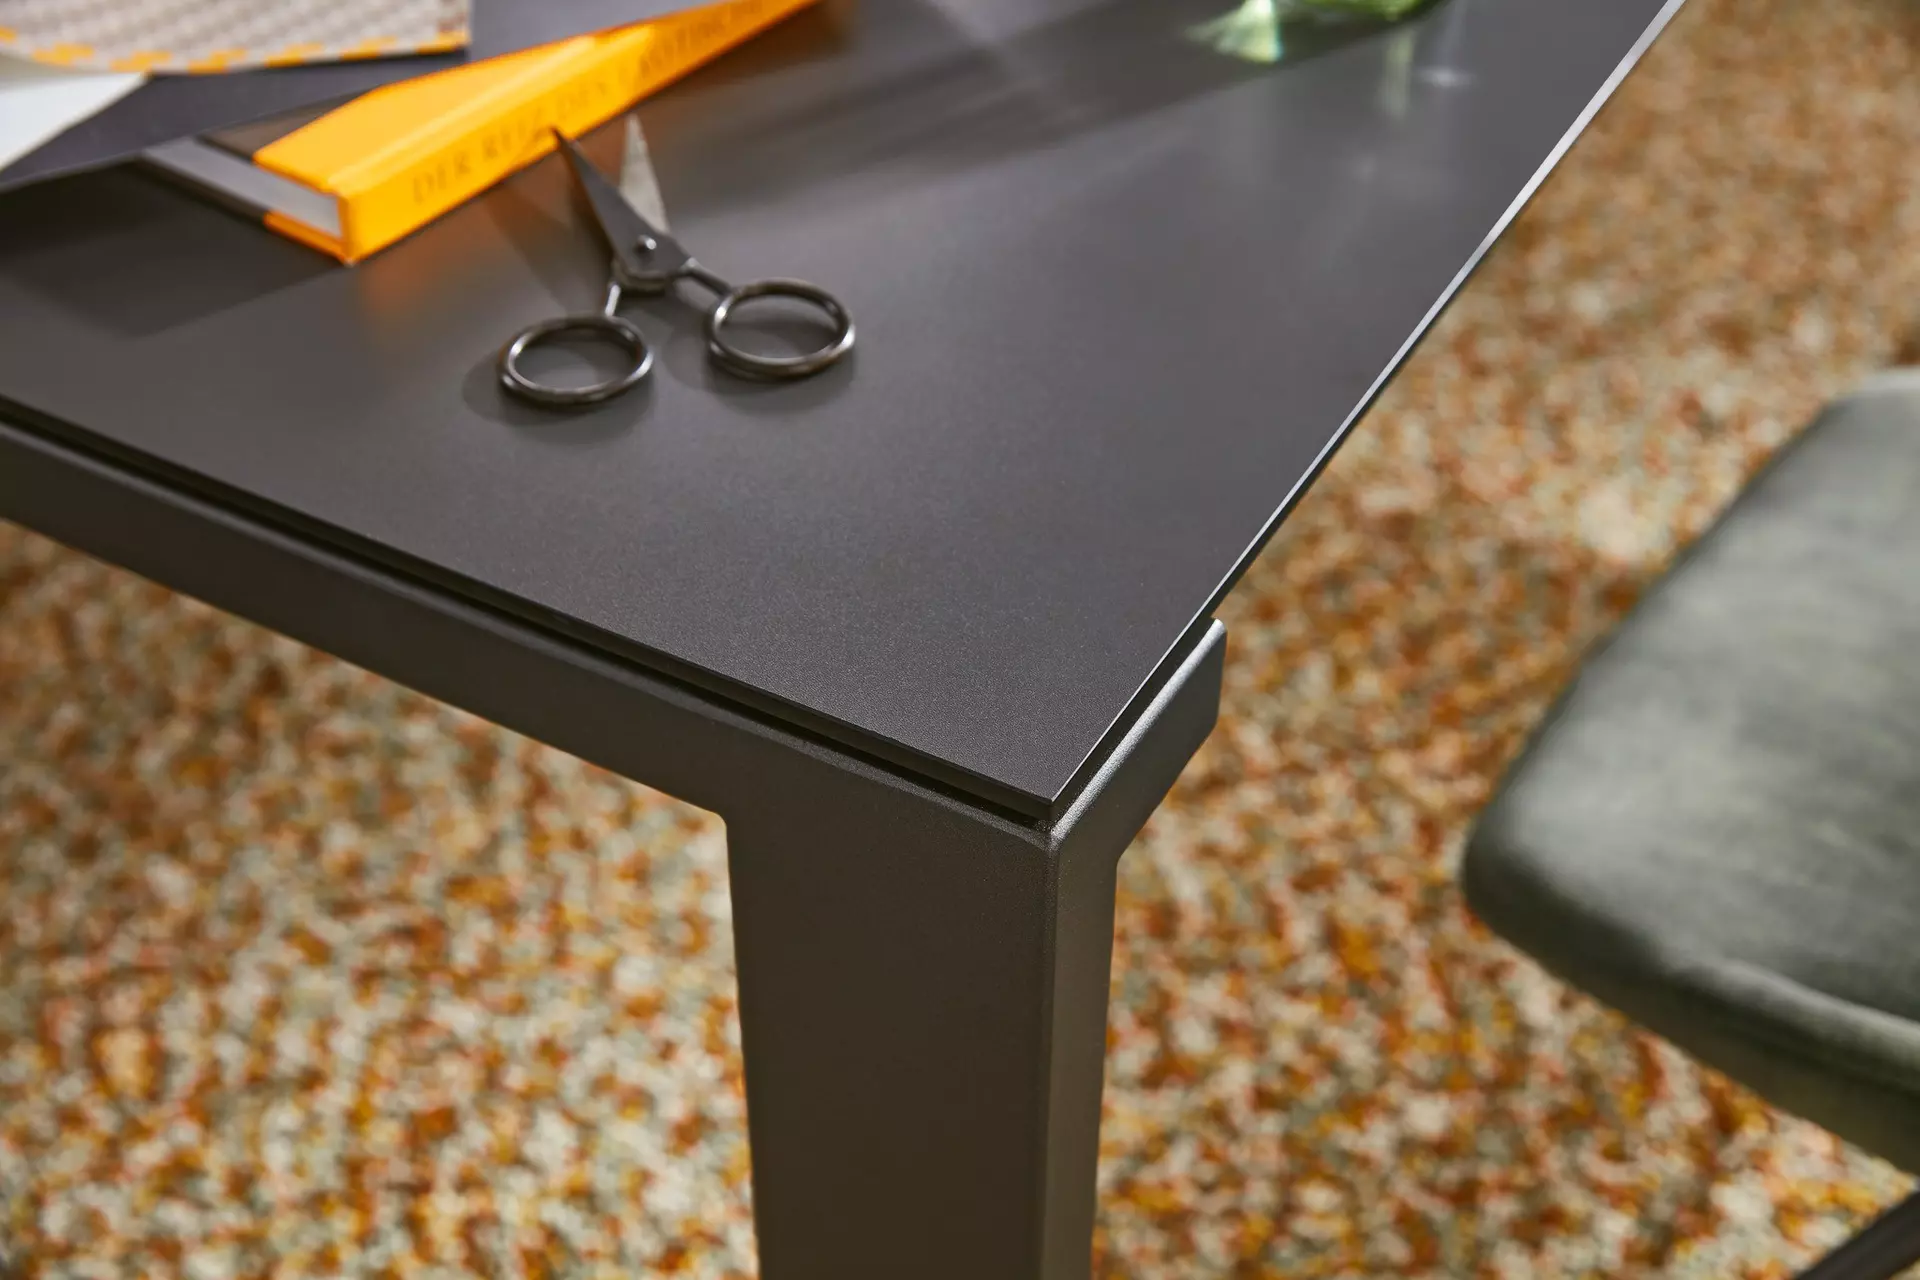 Tisch mit Auszug Musterring Musterring Holzwerkstoff 100 x 77 x 180 cm